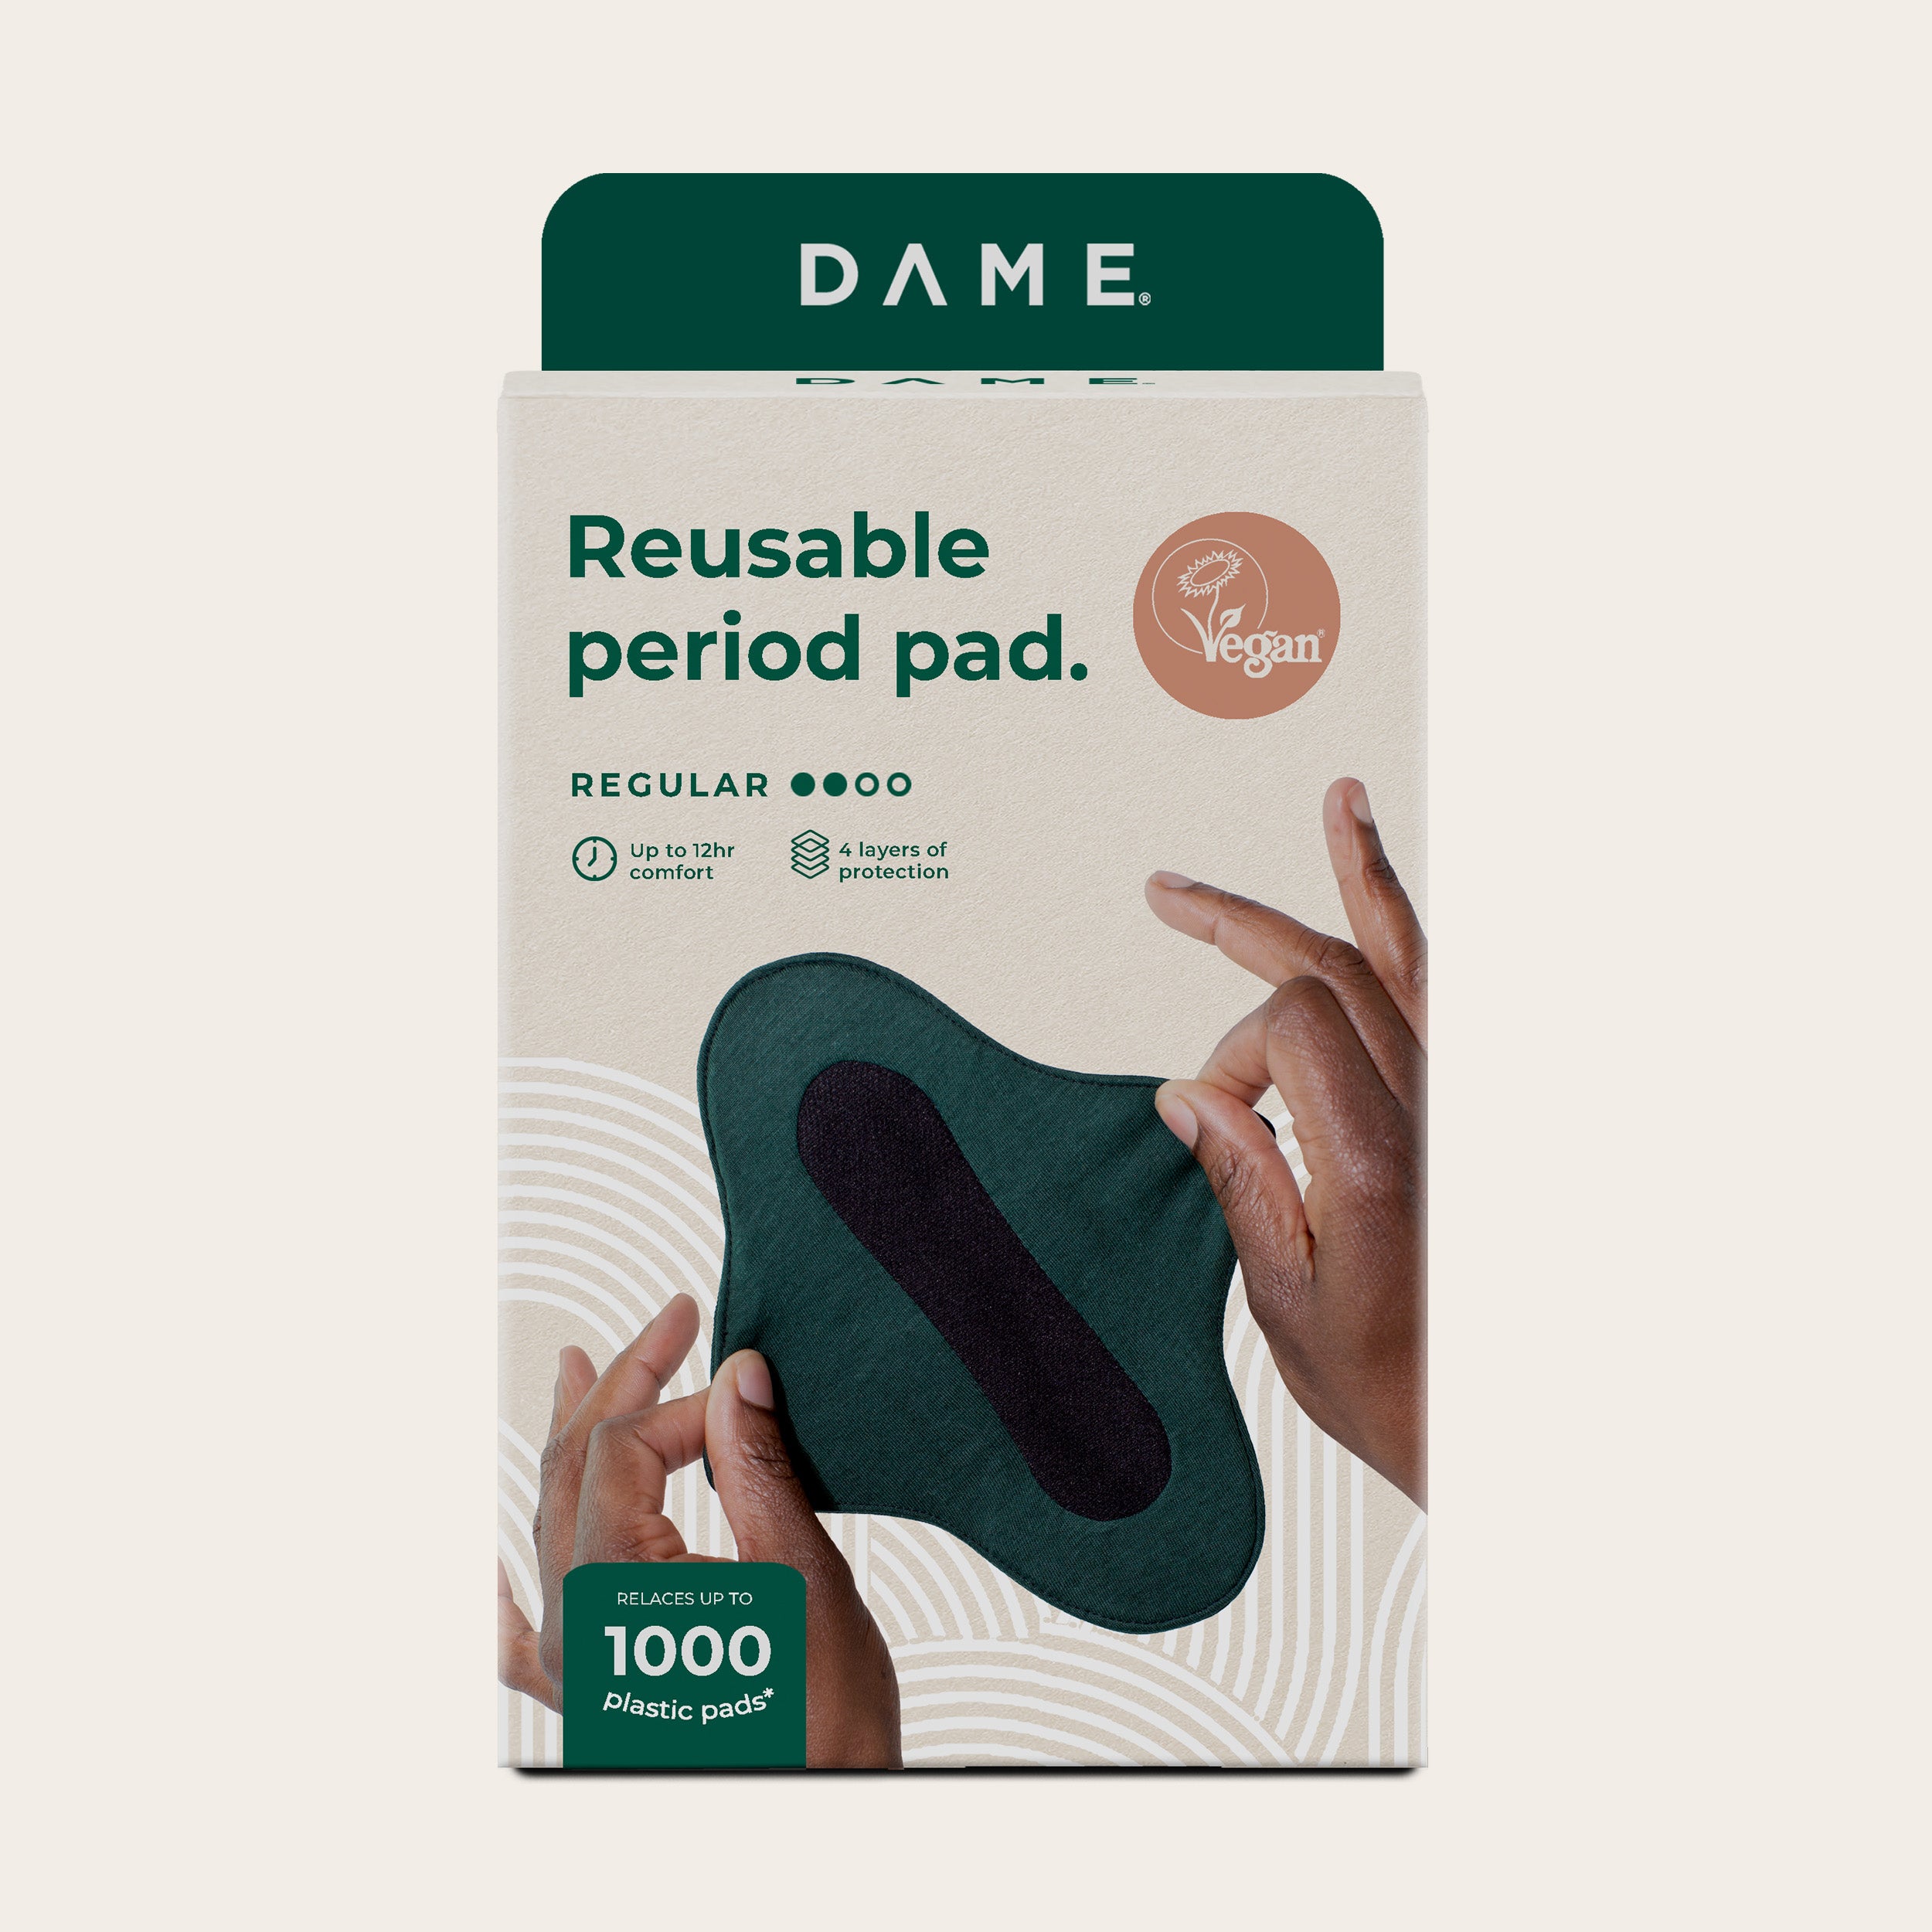 DAME's Reusable Period Pad